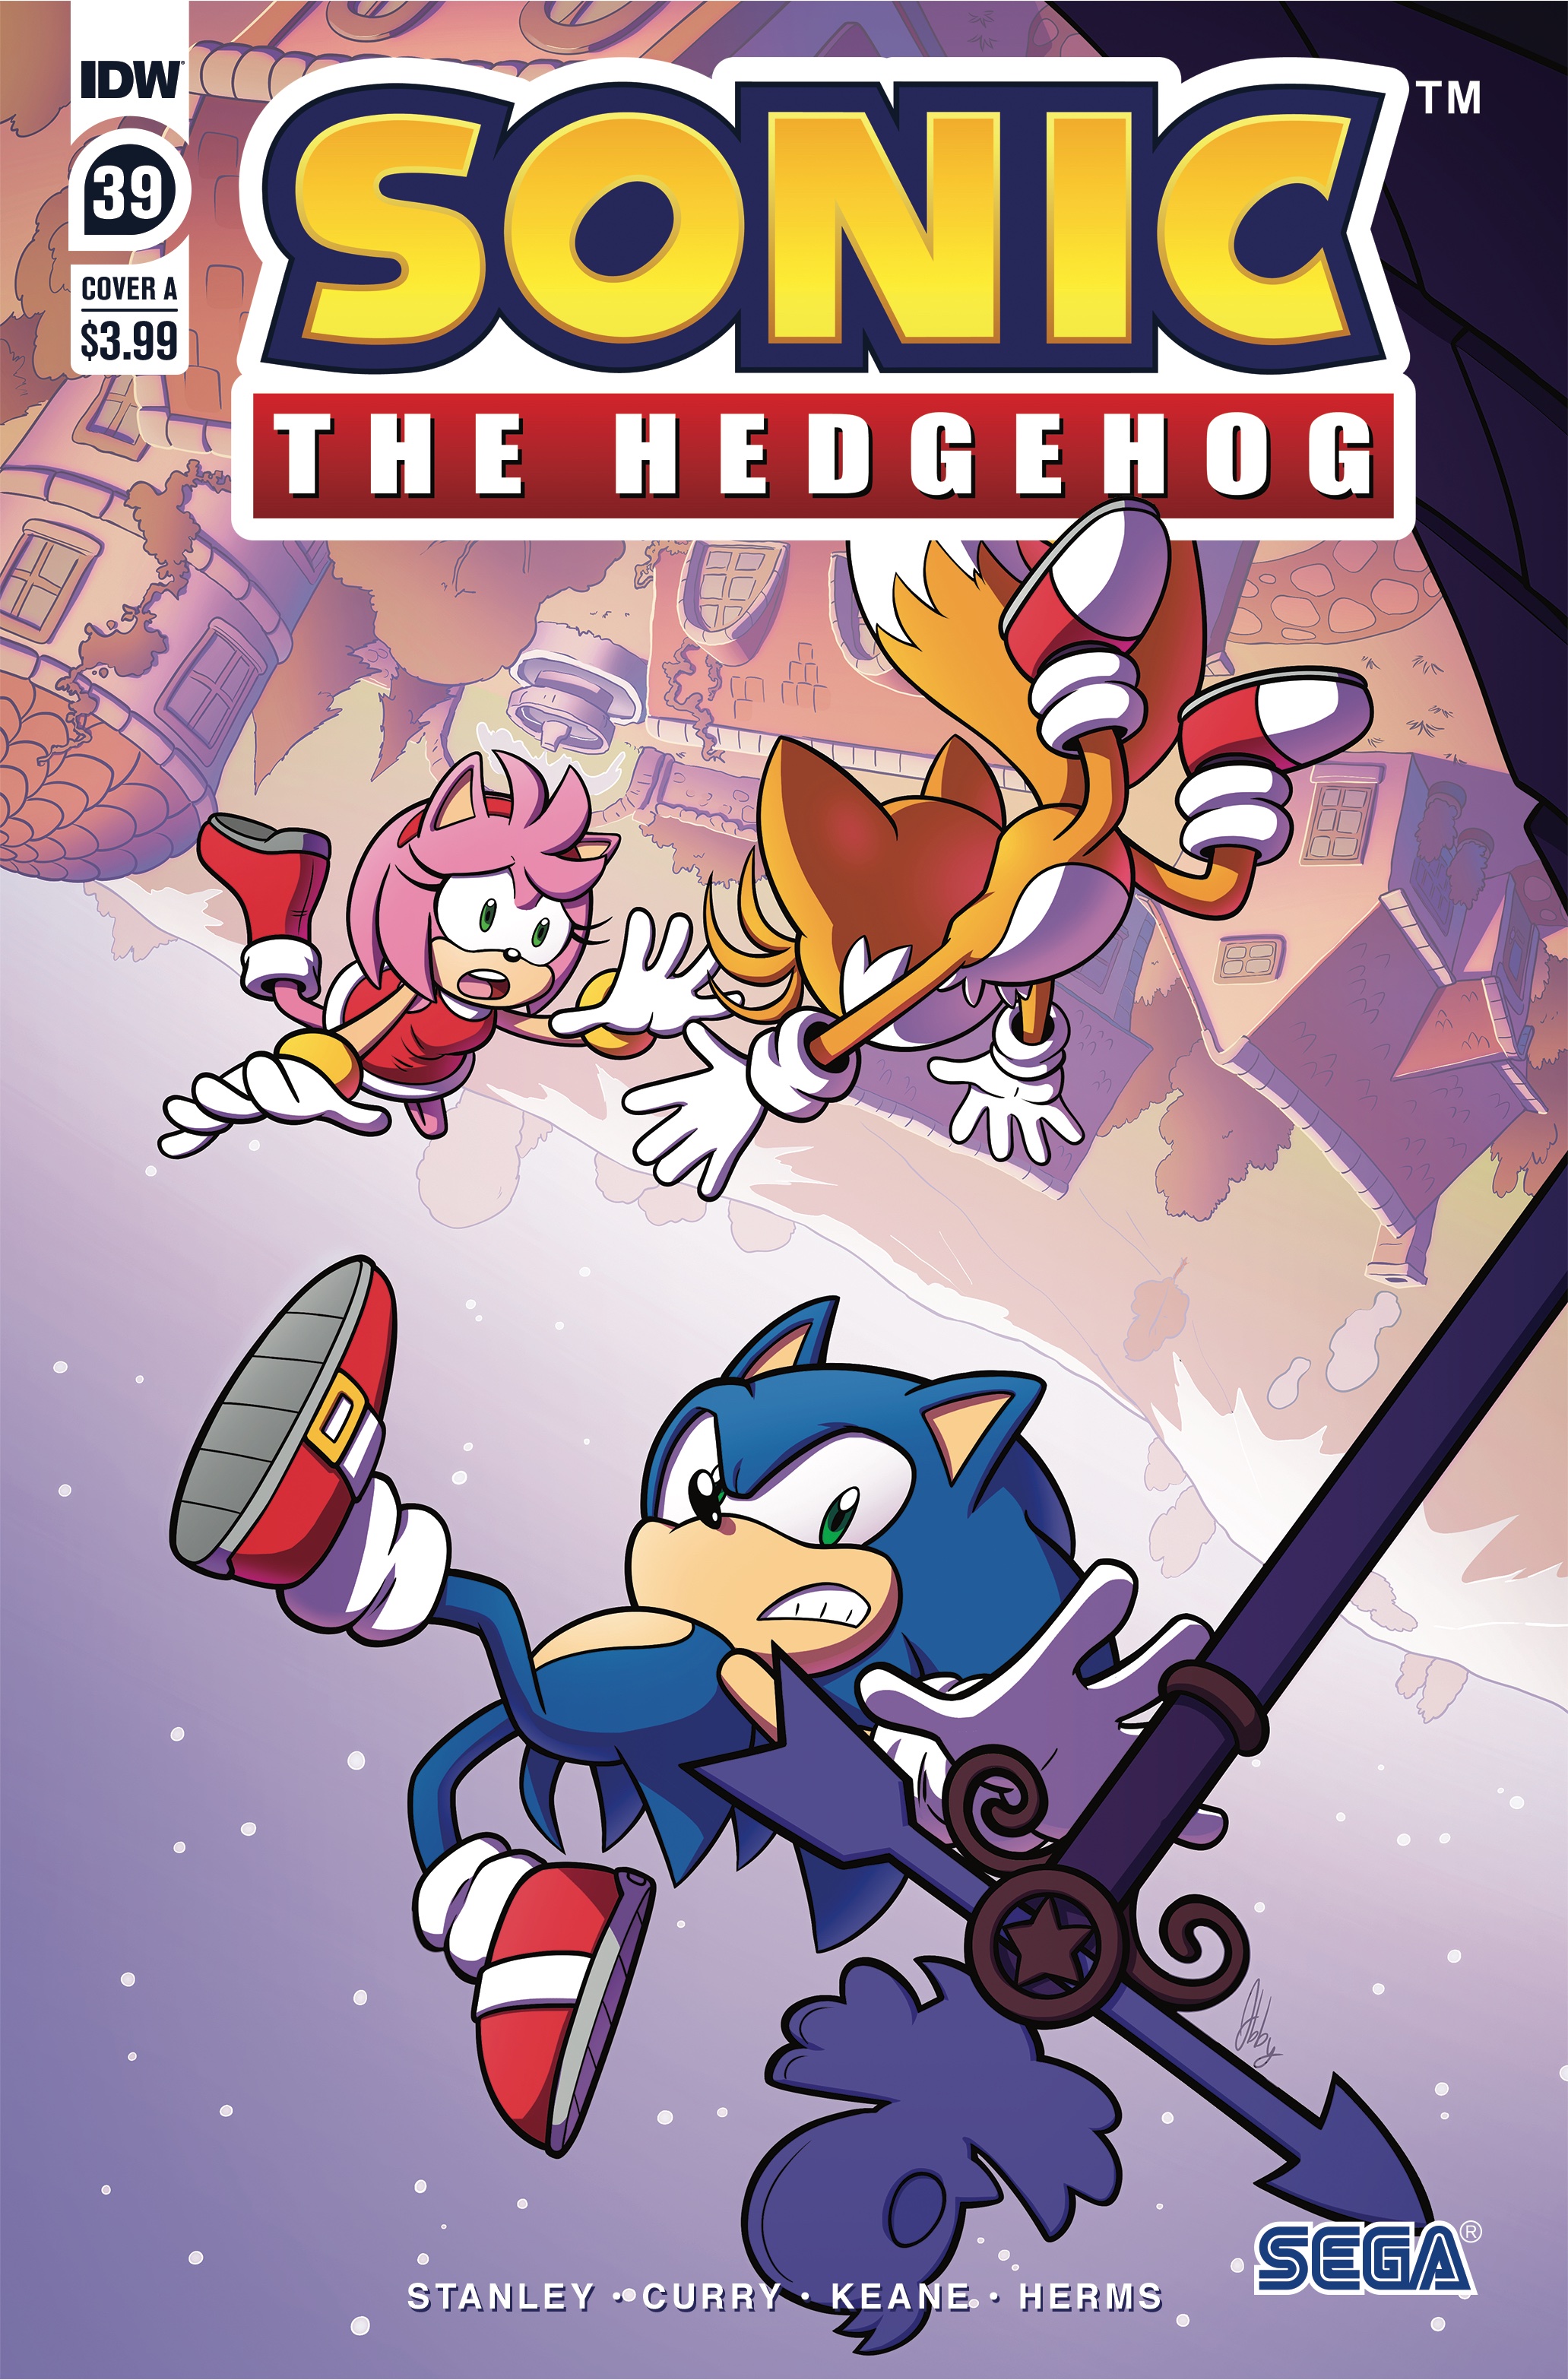 Editora IDW revela capa de nova série em quadrinhos de Sonic!